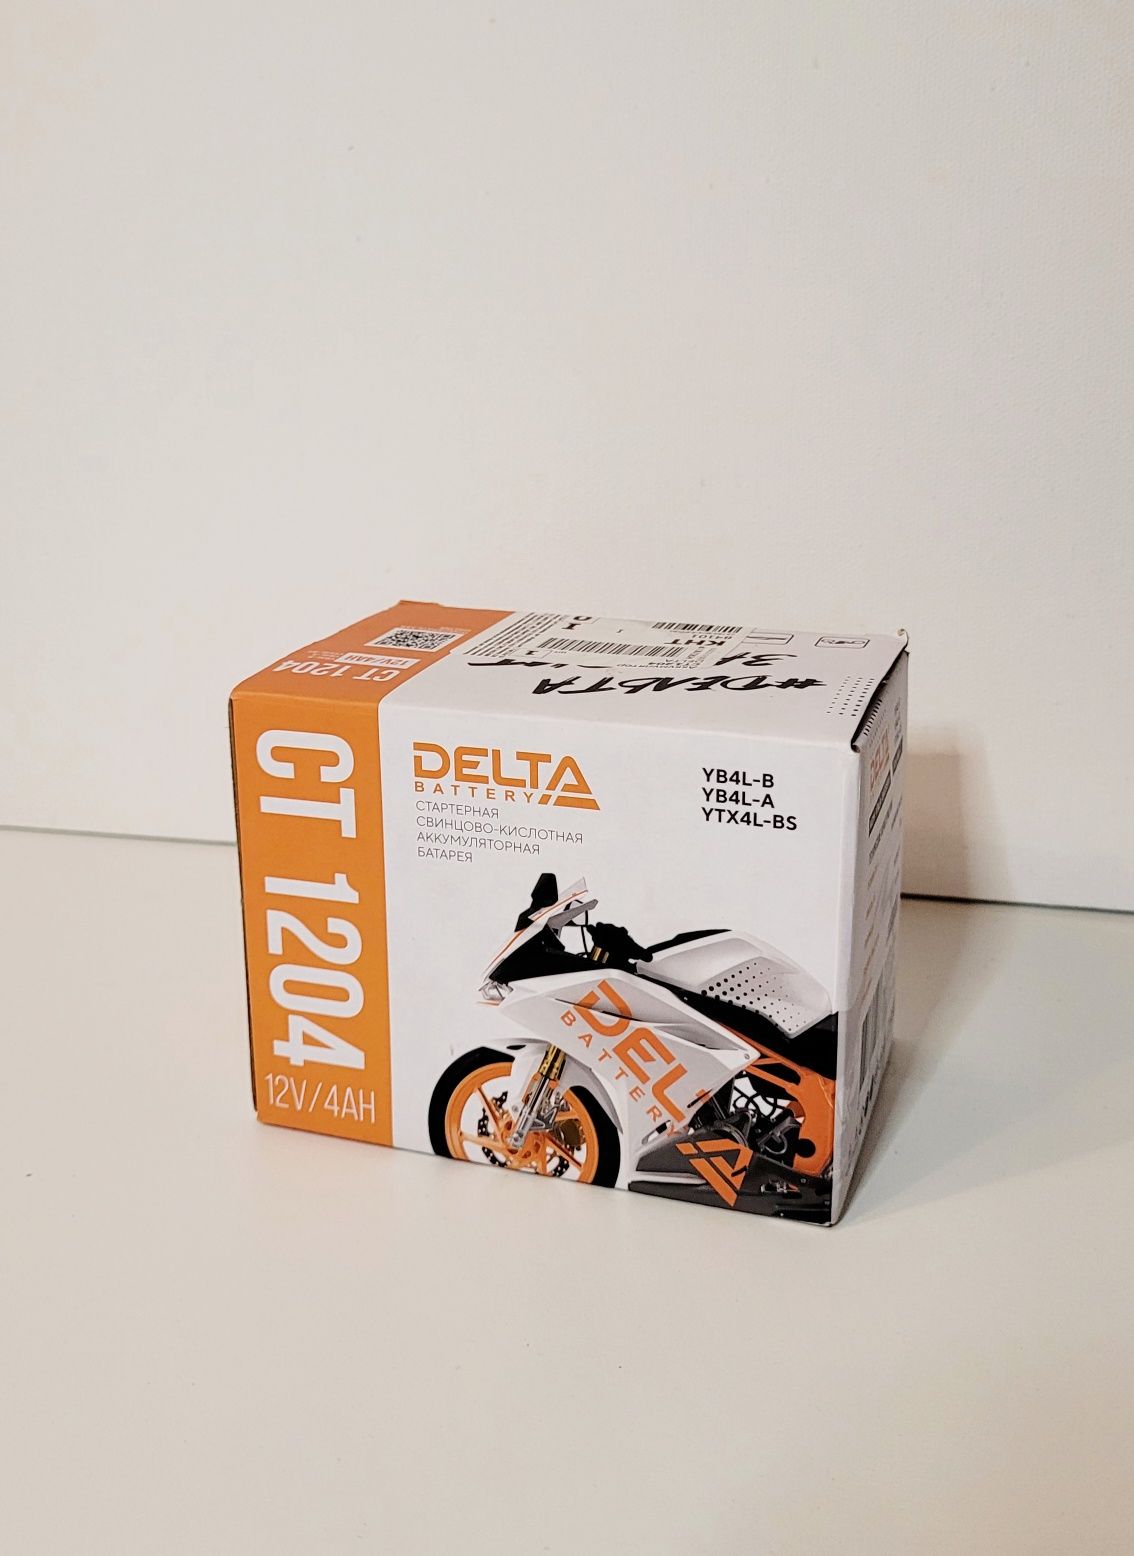 Аккумулятор для мопеда/скутера Honda Suzuki Yamaha. Delta ct1204